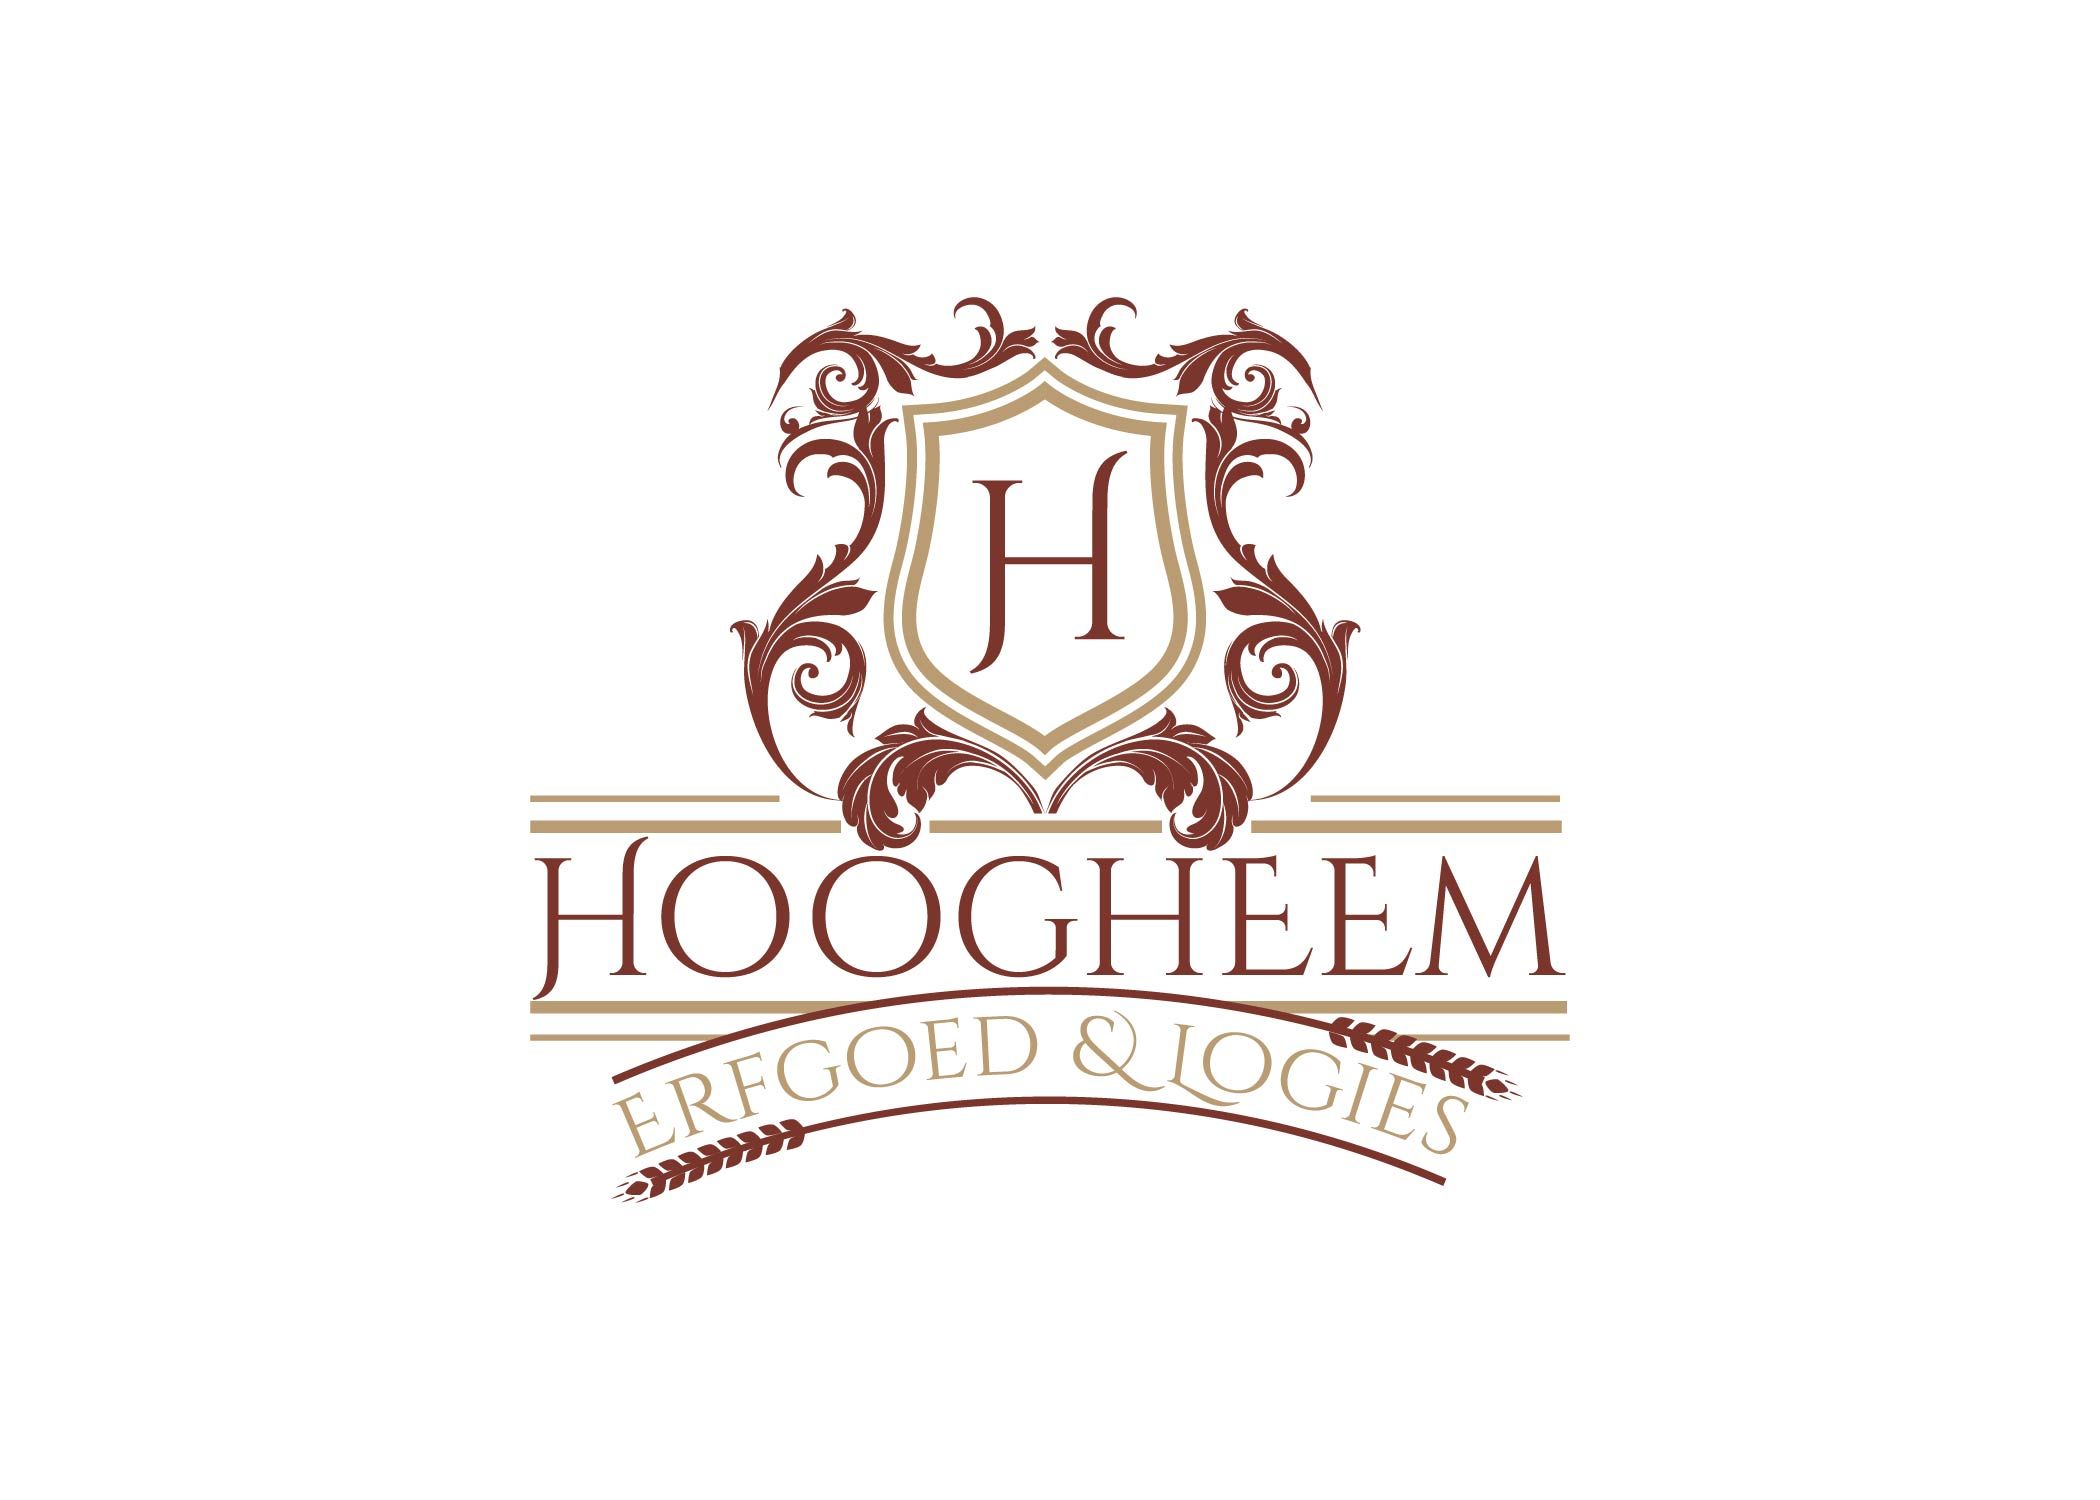 Hoogheem Erfgoed & Logies